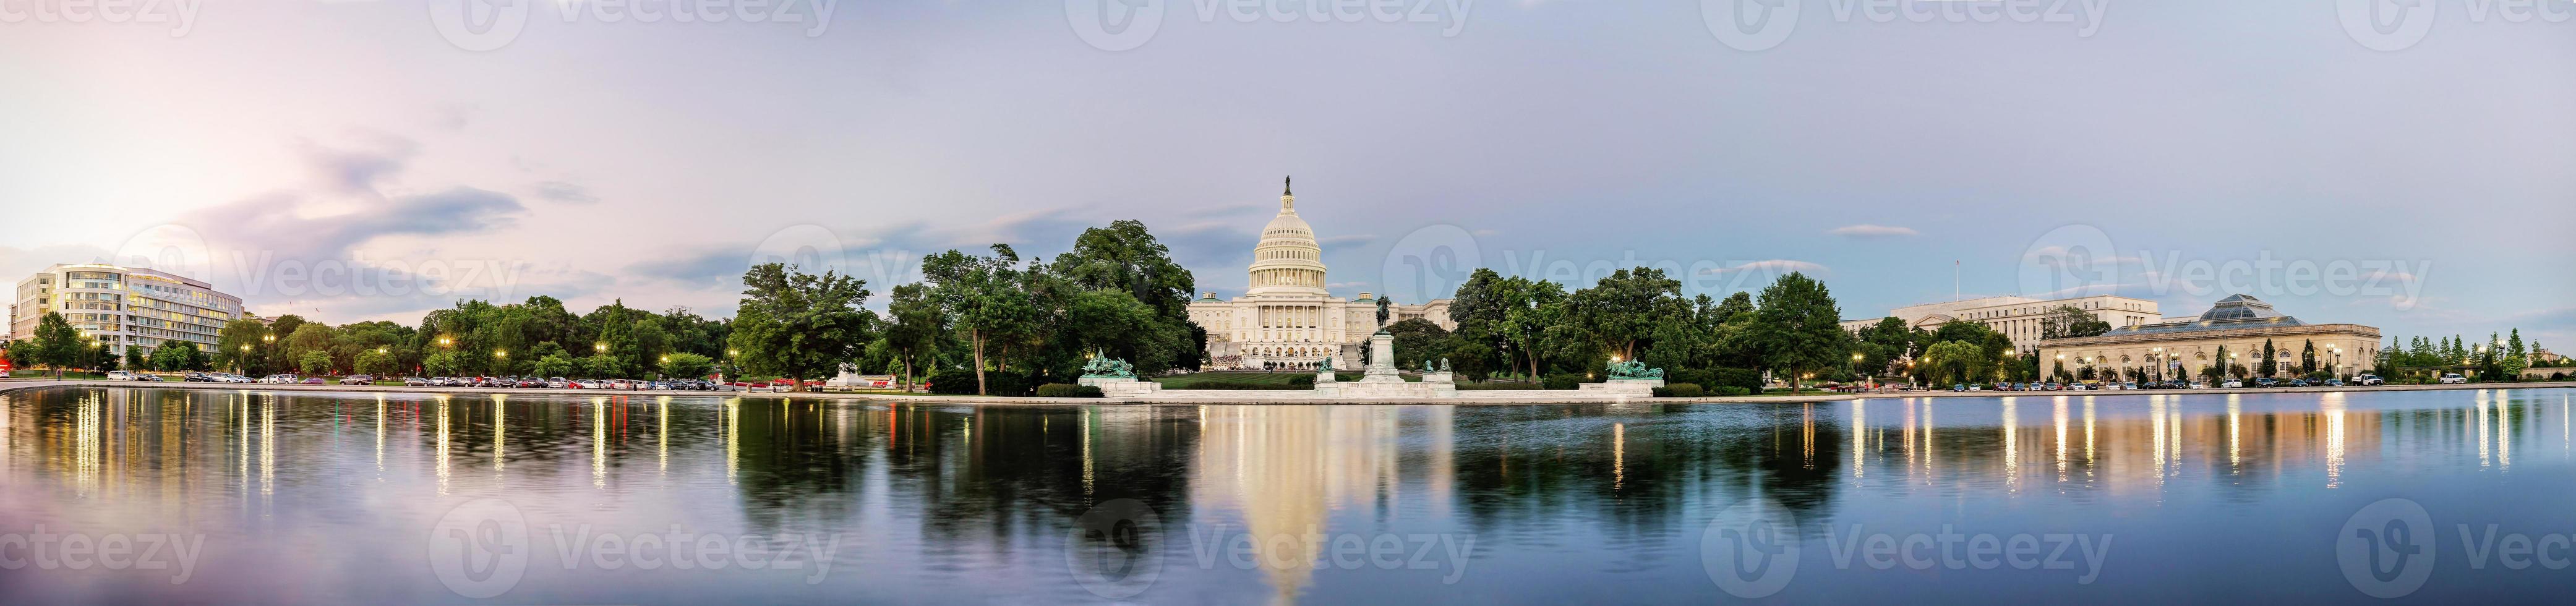 Edificio del Capitolio de los Estados Unidos Washington DC, EE. foto